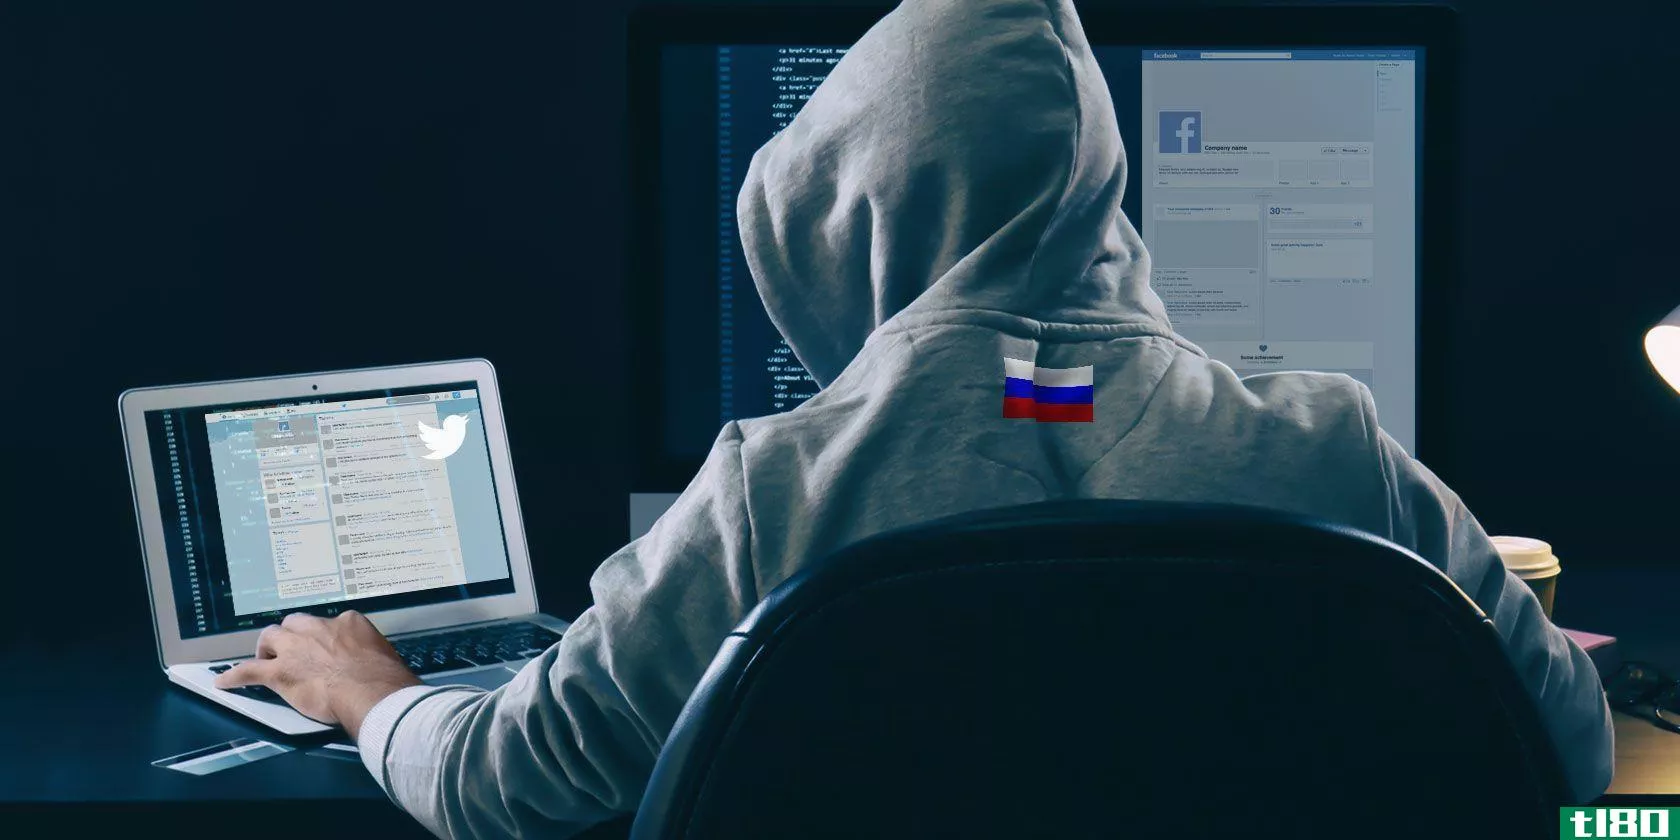 俄罗斯特工如何出现在你的facebook和twitter流中